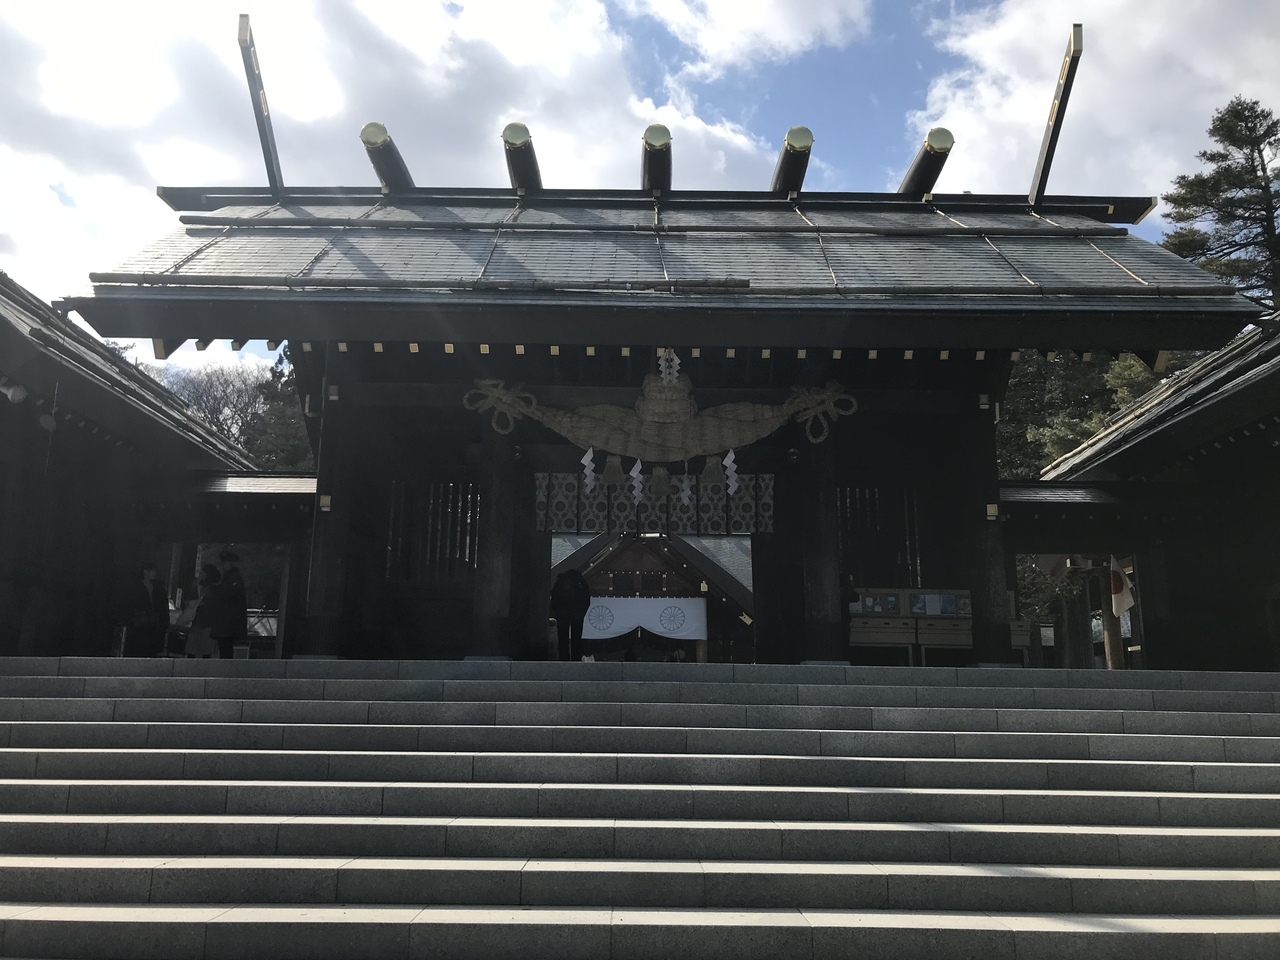 さてレンタカーに乗って「北海道神宮」へ御朱印をいただきに来ました。

「北海道総鎮守」の神社として知られる北海道神宮。
神社の敷地は札幌ドームの3倍以上（1万8000平方メートル）
とても広い(^・^)